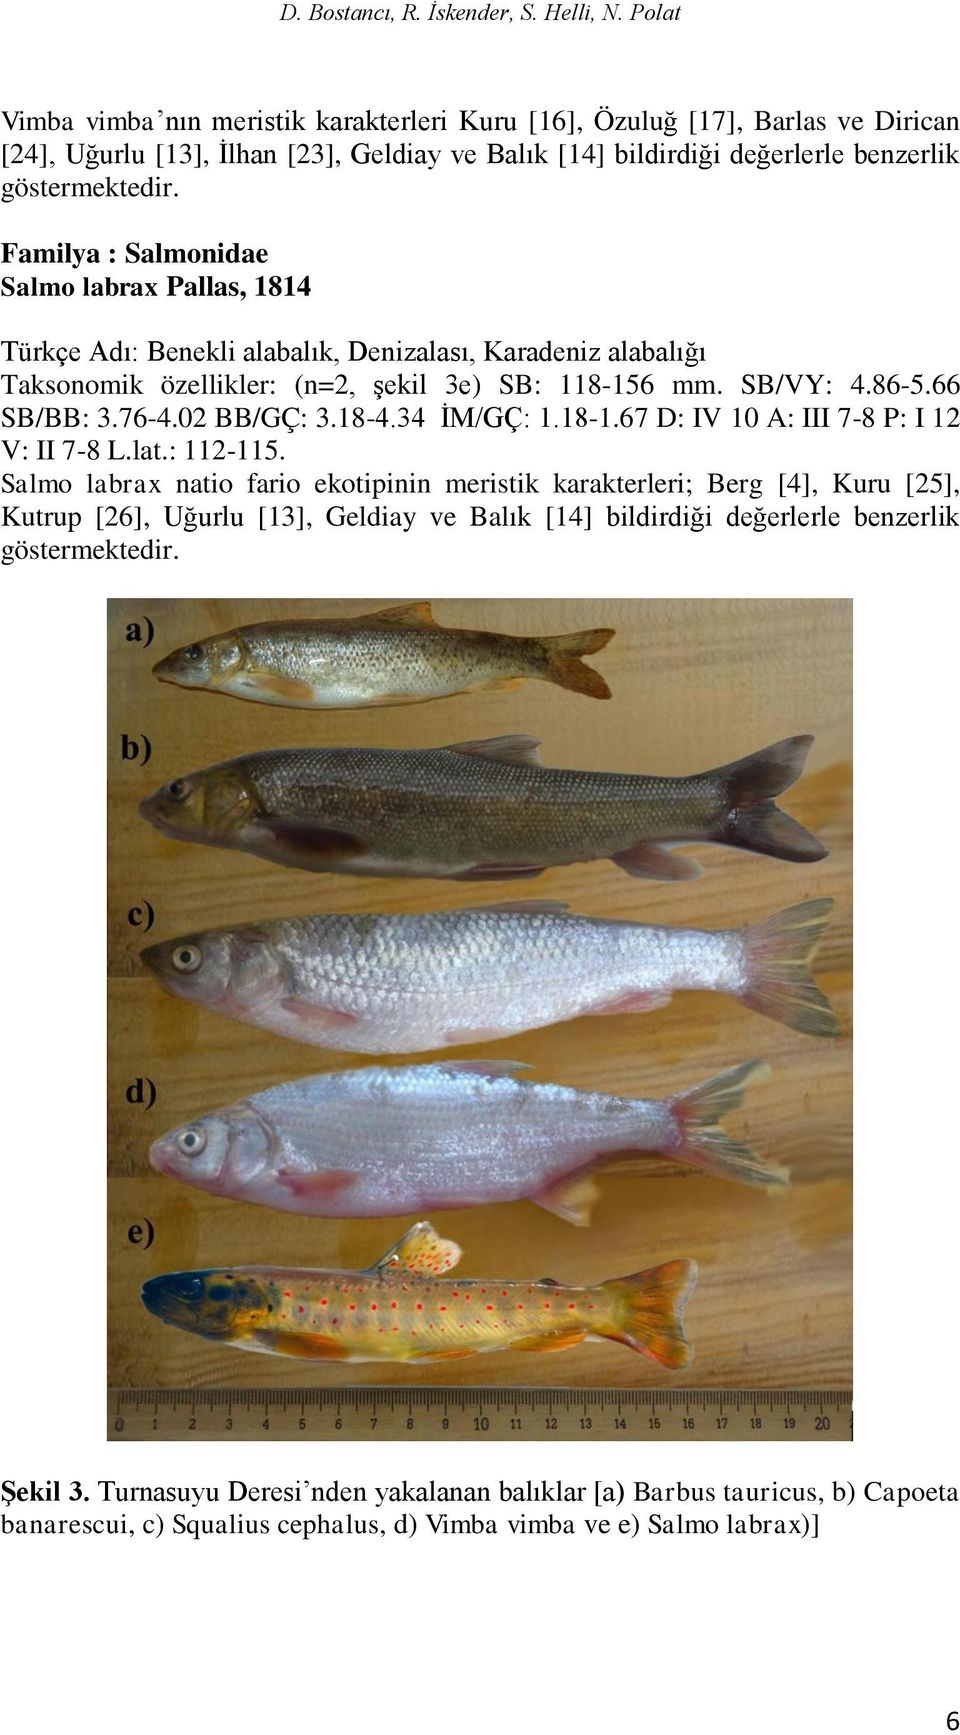 Familya : Salmonidae Salmo labrax Pallas, 1814 Türkçe Adı: Benekli alabalık, Denizalası, Karadeniz alabalığı Taksonomik özellikler: (n=2, şekil 3e) SB: 118-156 mm. SB/VY: 4.86-5.66 SB/BB: 3.76-4.